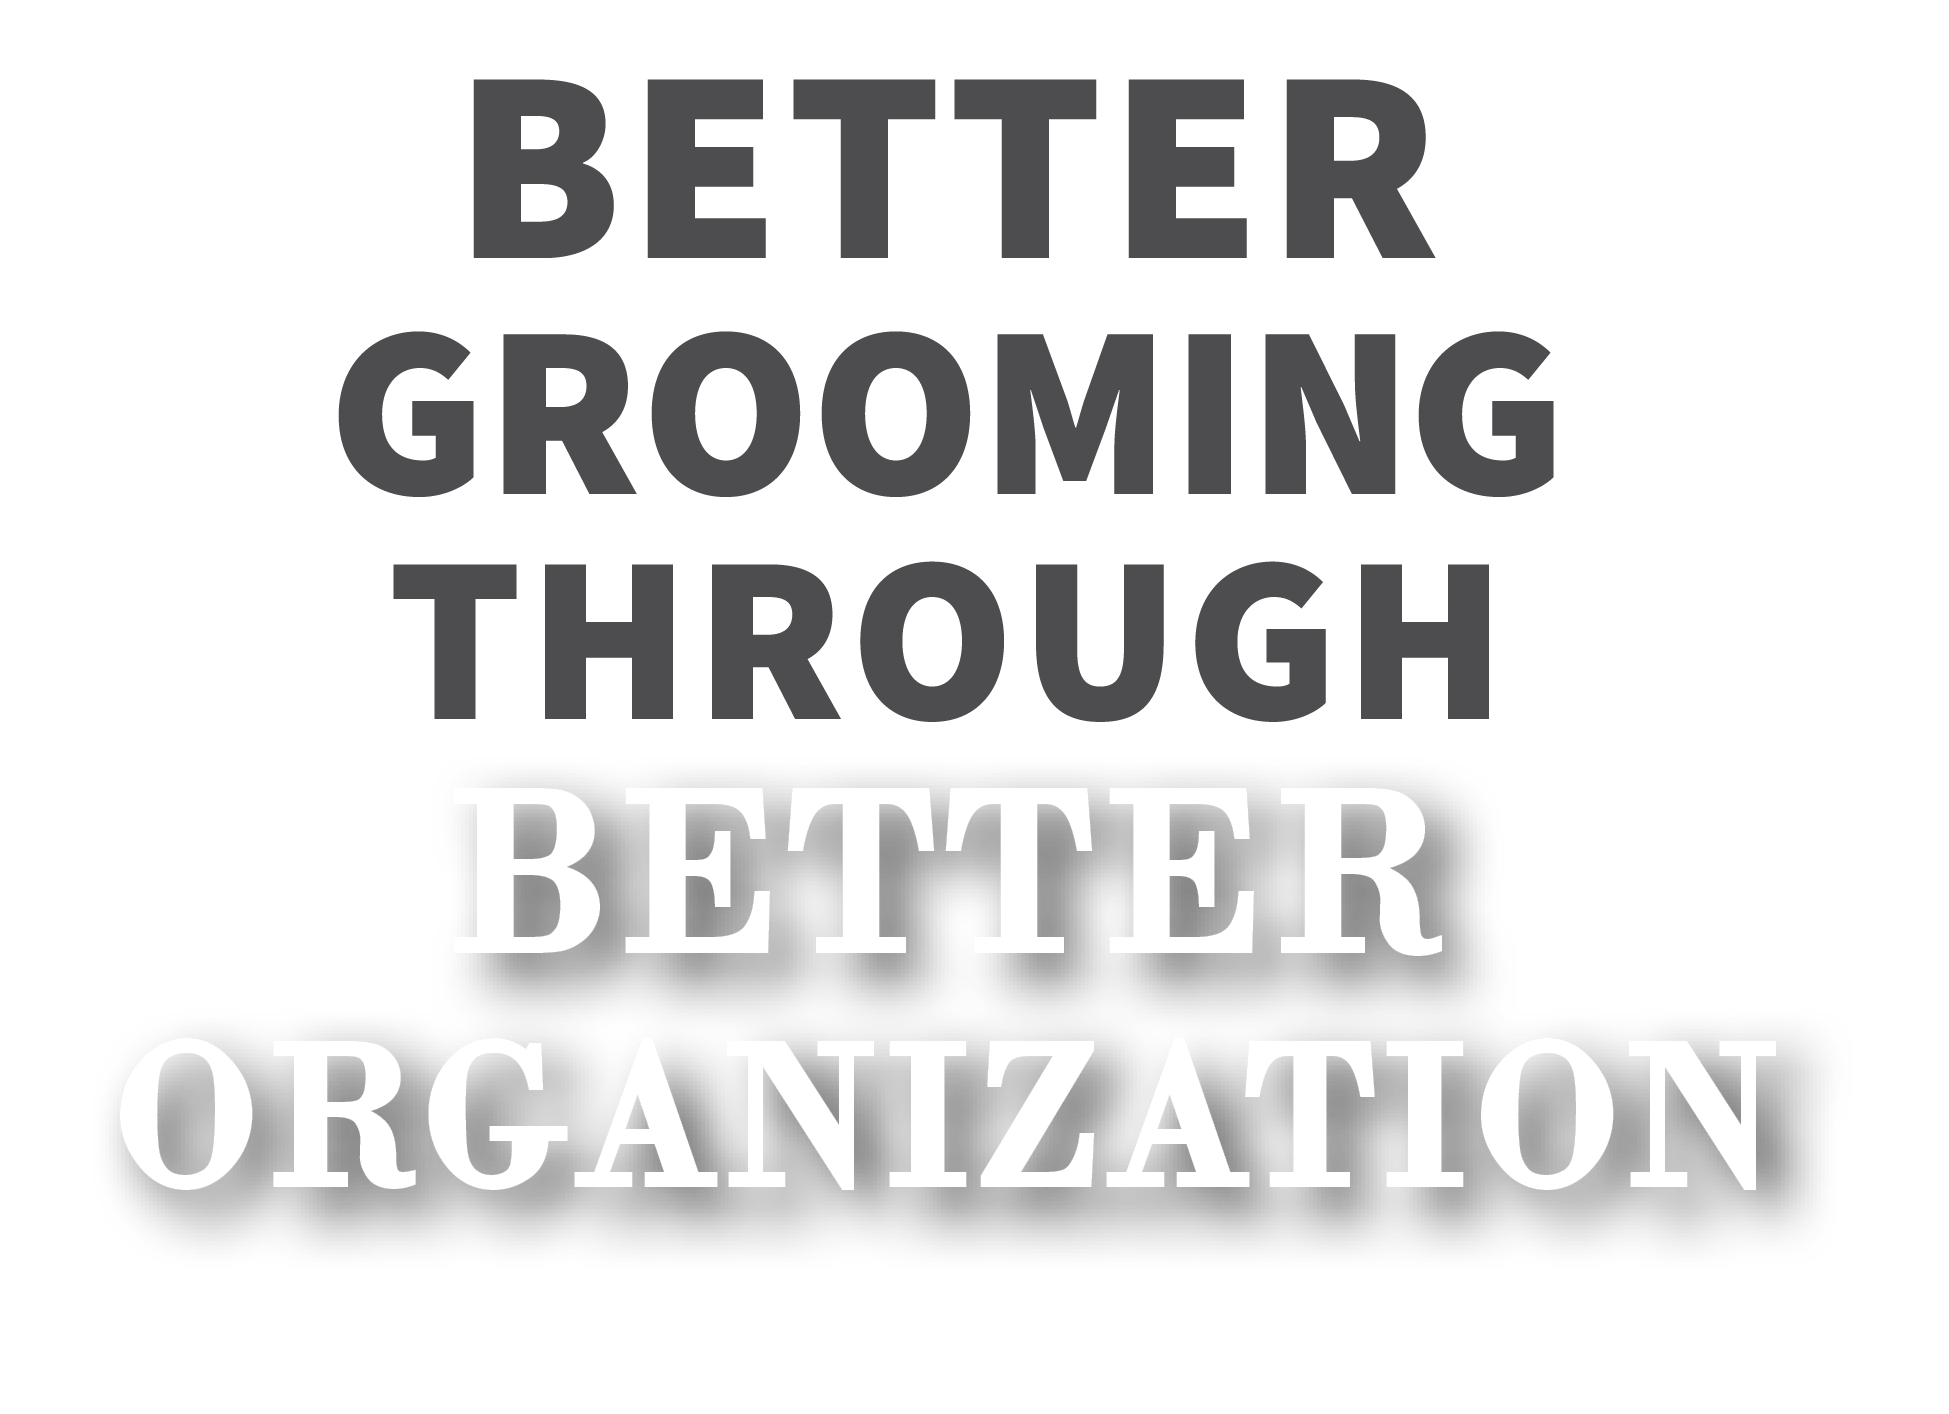 Better Grooming Through better Organization